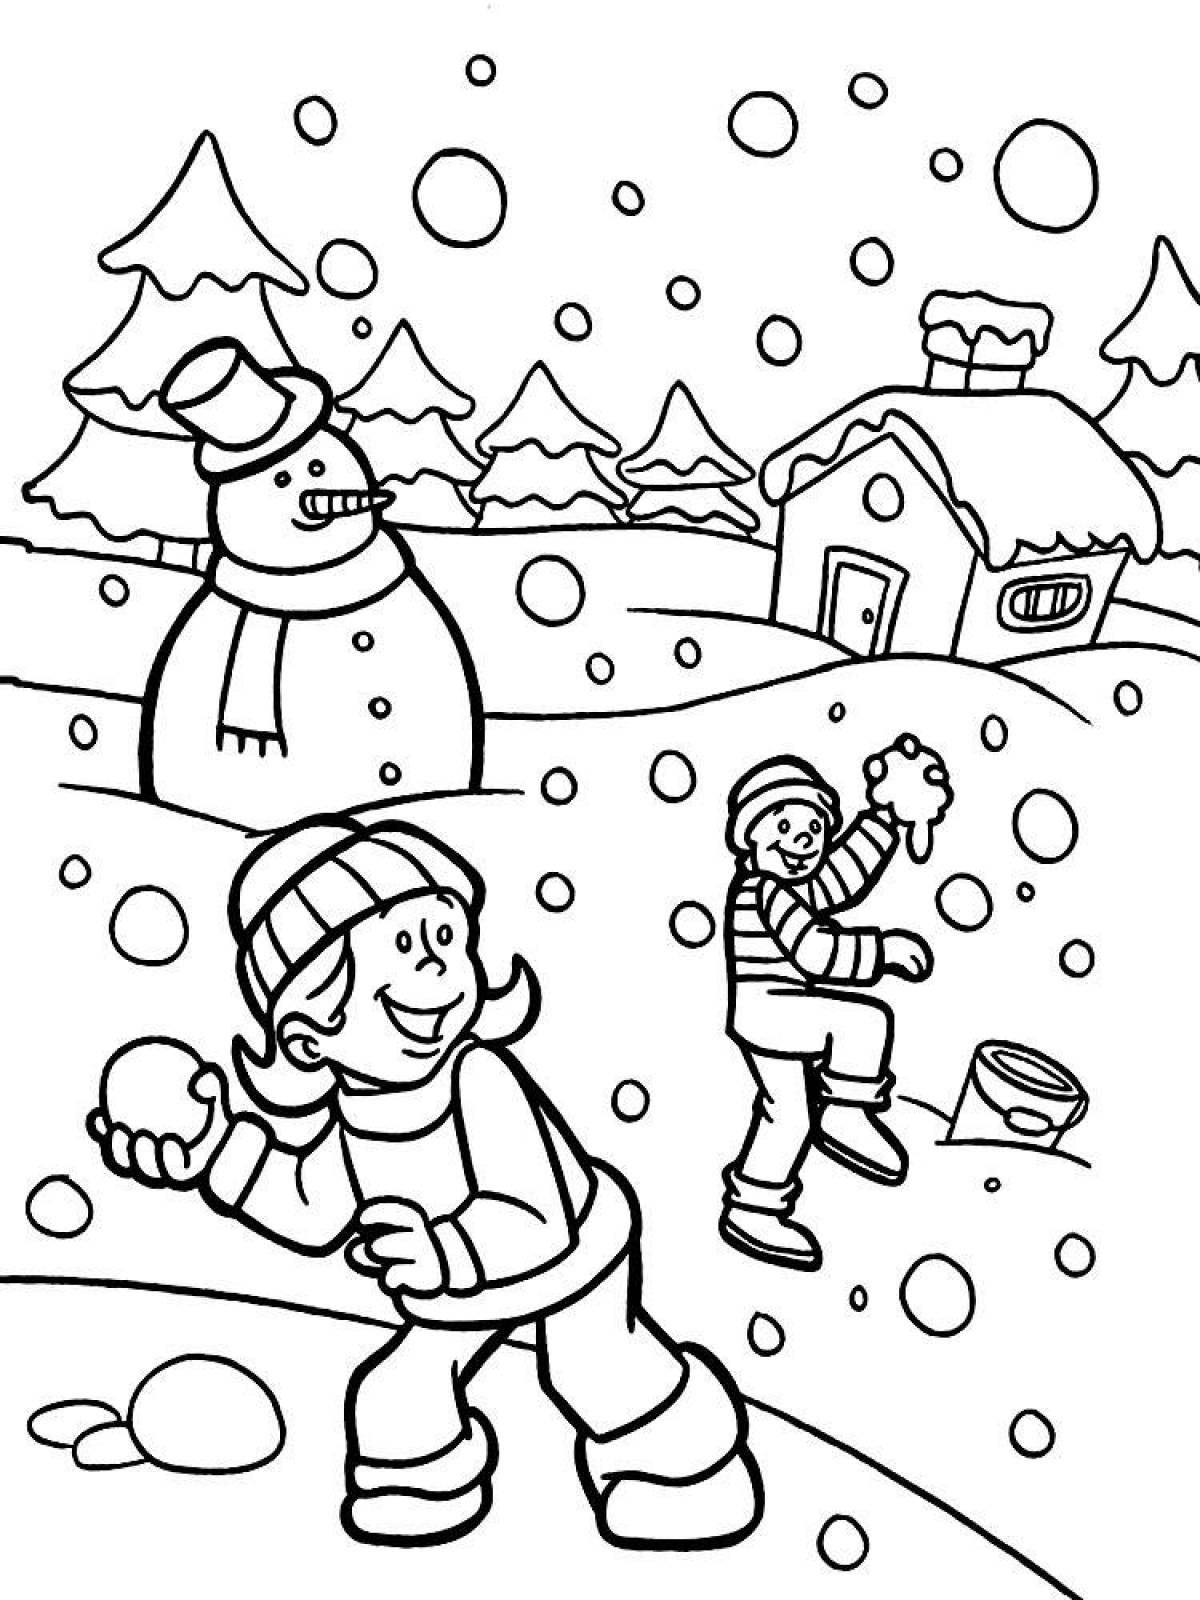 Яркая раскраска для детей зимние забавы 5-6 лет